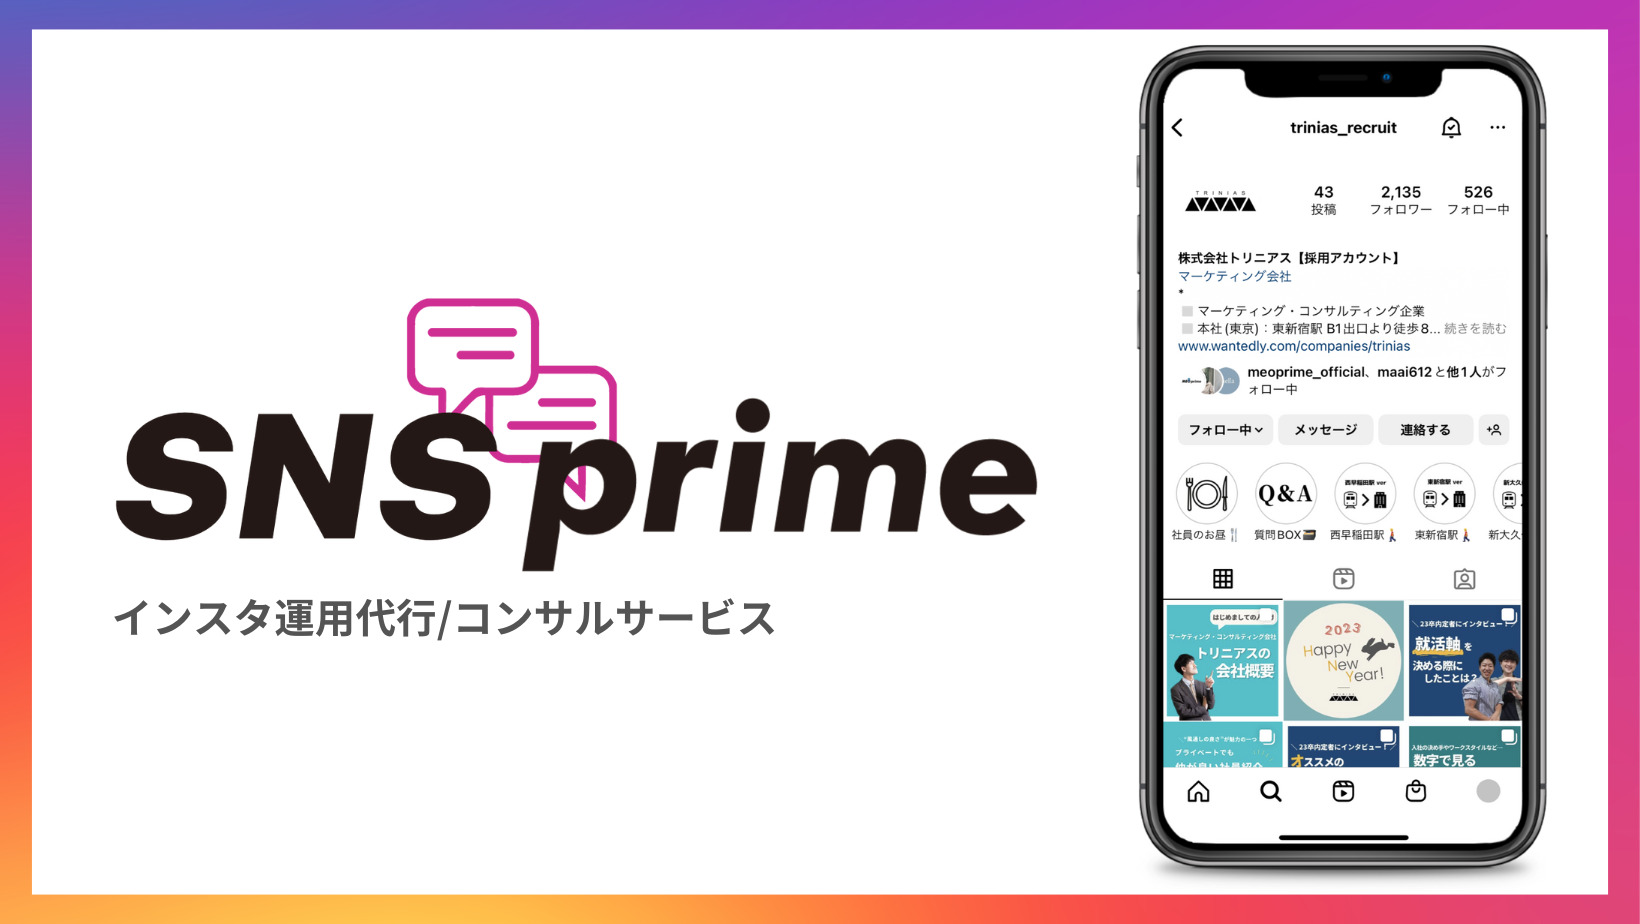 インスタ運用代行/コンサルサービス【SNS prime】